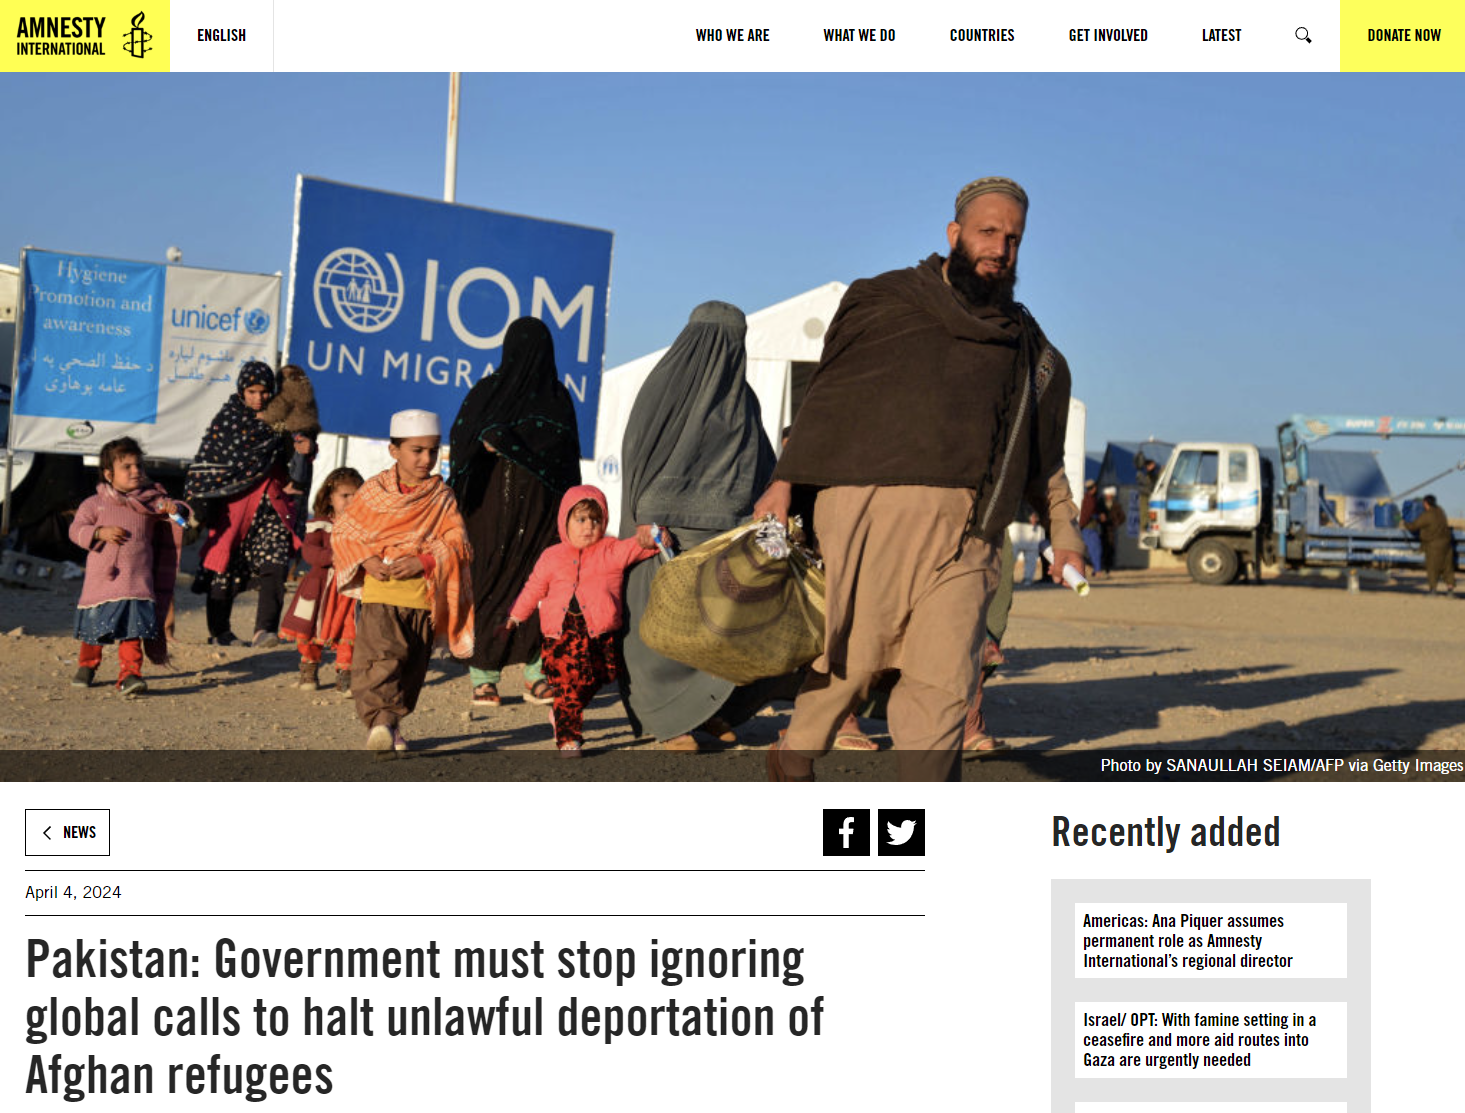 Διεθνής Αμνηστία: Η κυβέρνηση του Πακιστάν πρέπει να σταματήσει να αγνοεί τις παγκόσμιες εκκλήσεις για να σταματήσει η παράνομη απέλαση Αφγανών προσφύγων